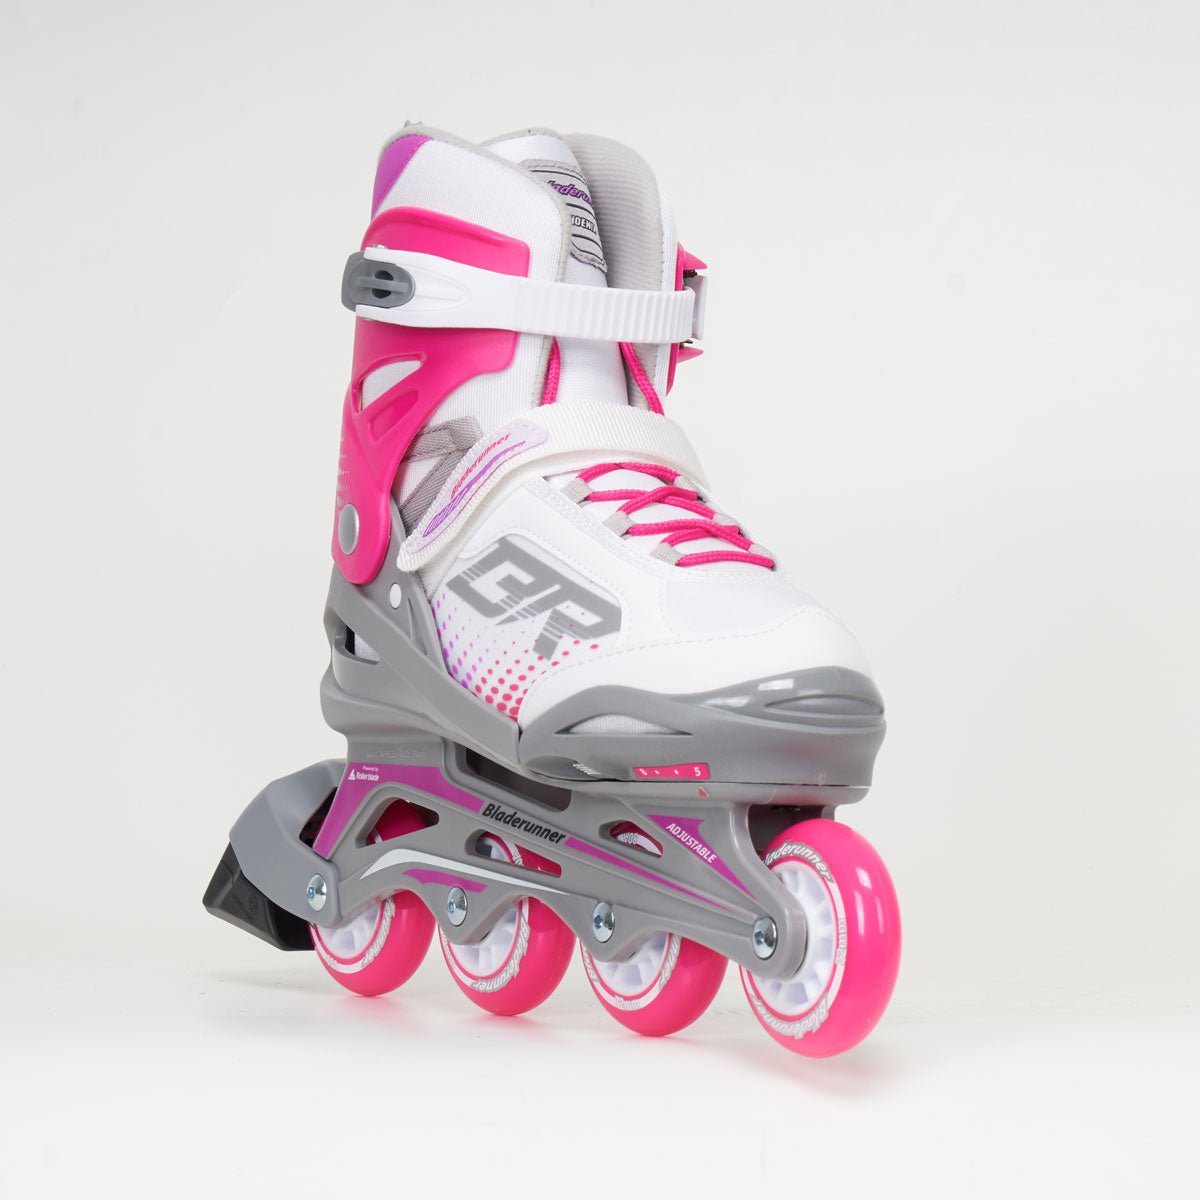 Bladerunner Phoenix G Junior White/Pink Adjustable Skates